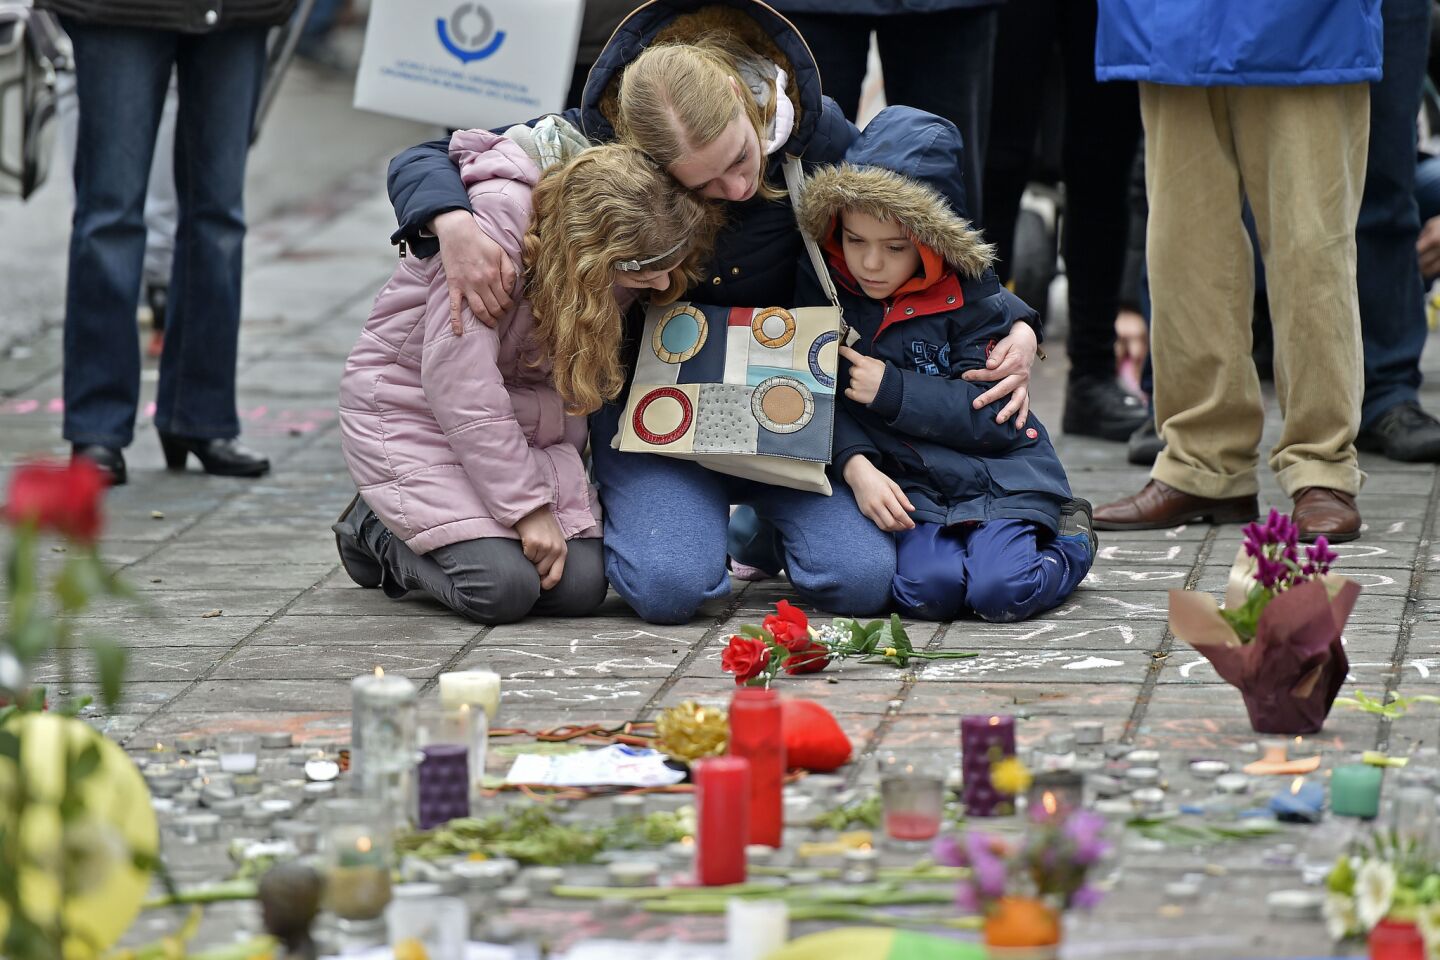 Terrorist attacks in Brussels